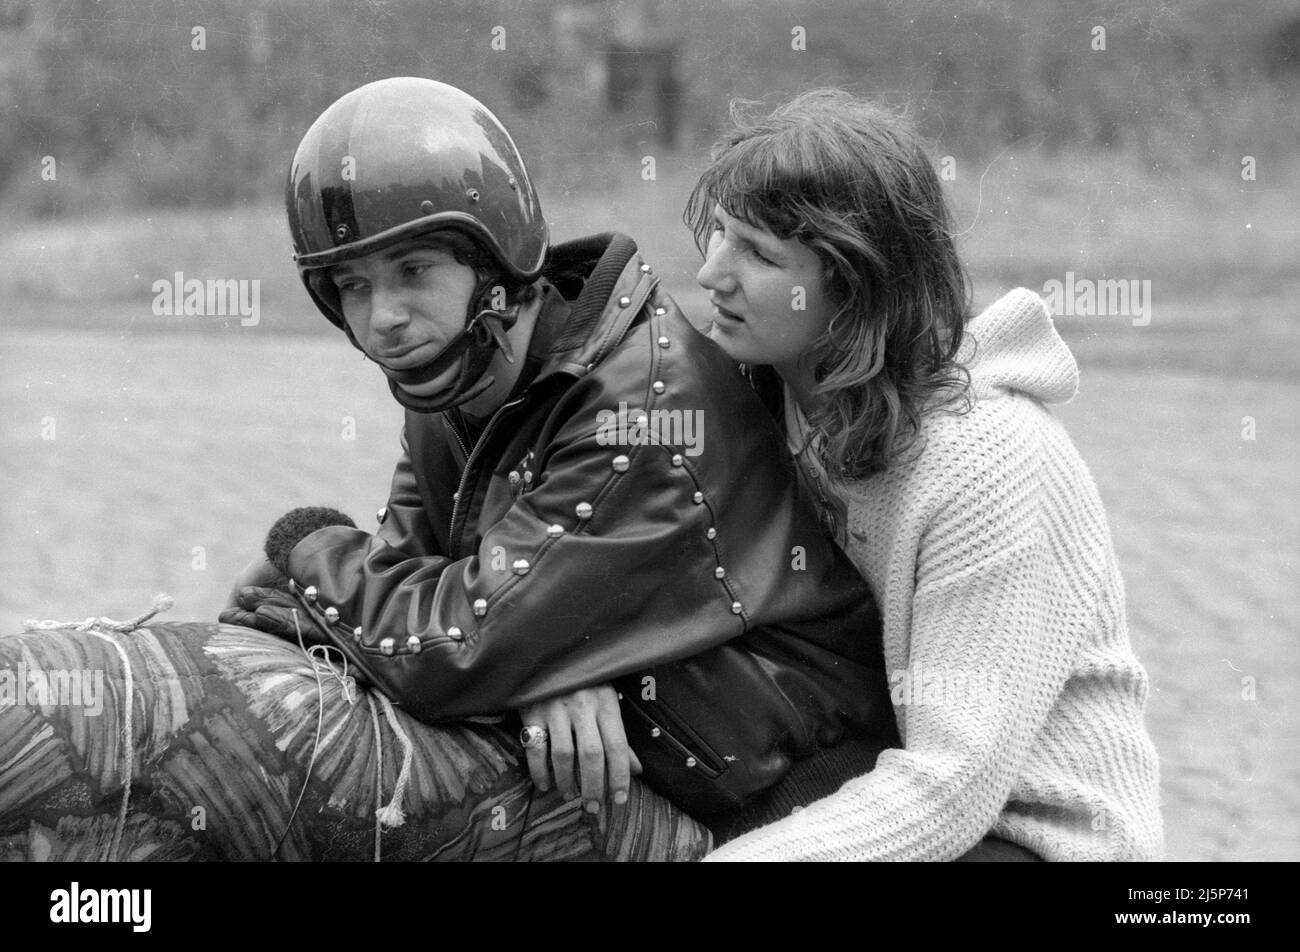 Membri dei Red Devils, una gang giovanile a Norimberga. I giovani indossano giacche decorate in pelle, si avvolge e passano il tempo a cavallo delle motociclette. [traduzione automatizzata] Foto Stock